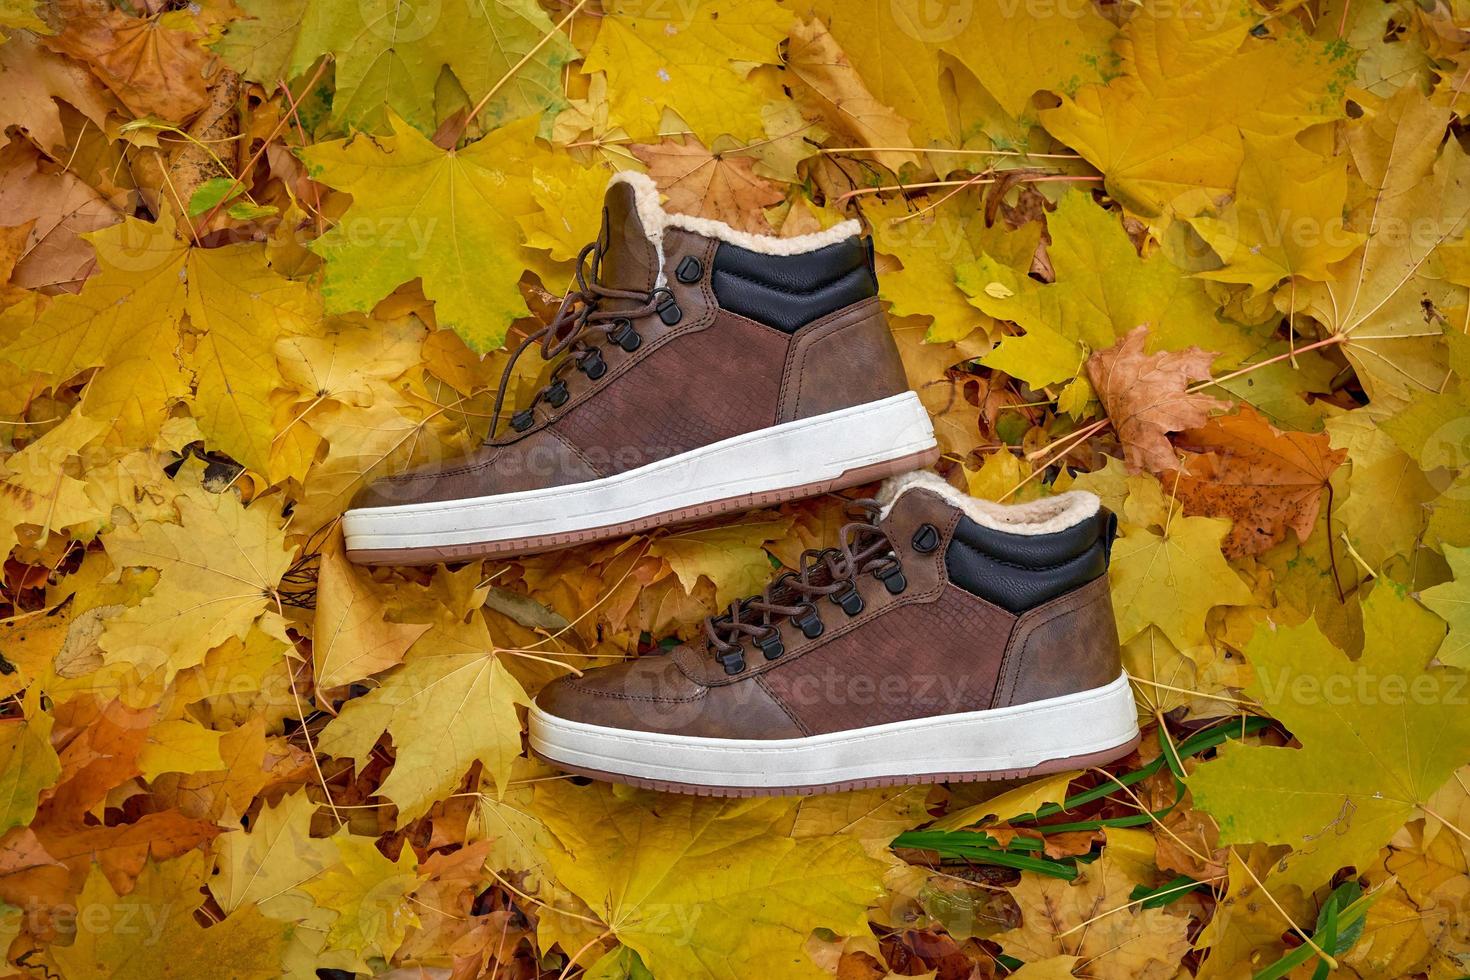 snygg, värma läder herr- skor på fallen löv. foto